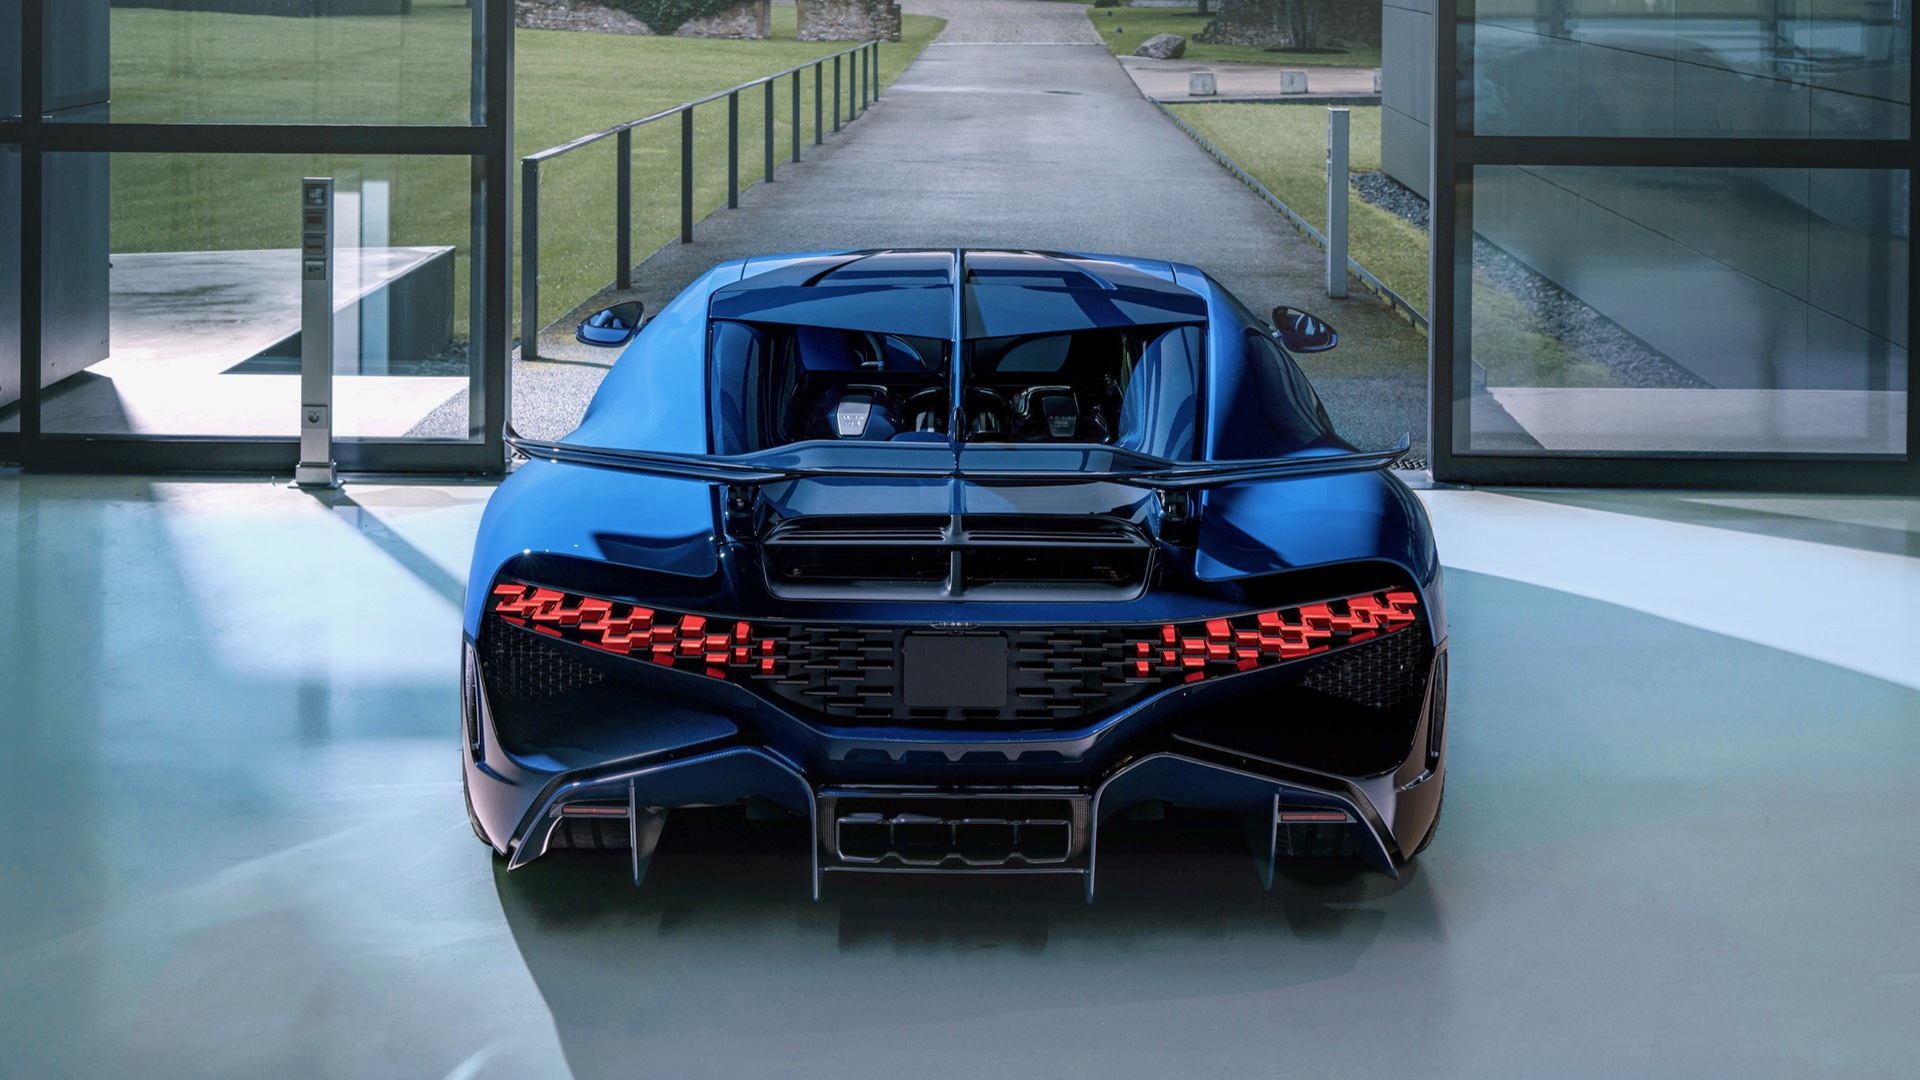 The final Bugatti Divo